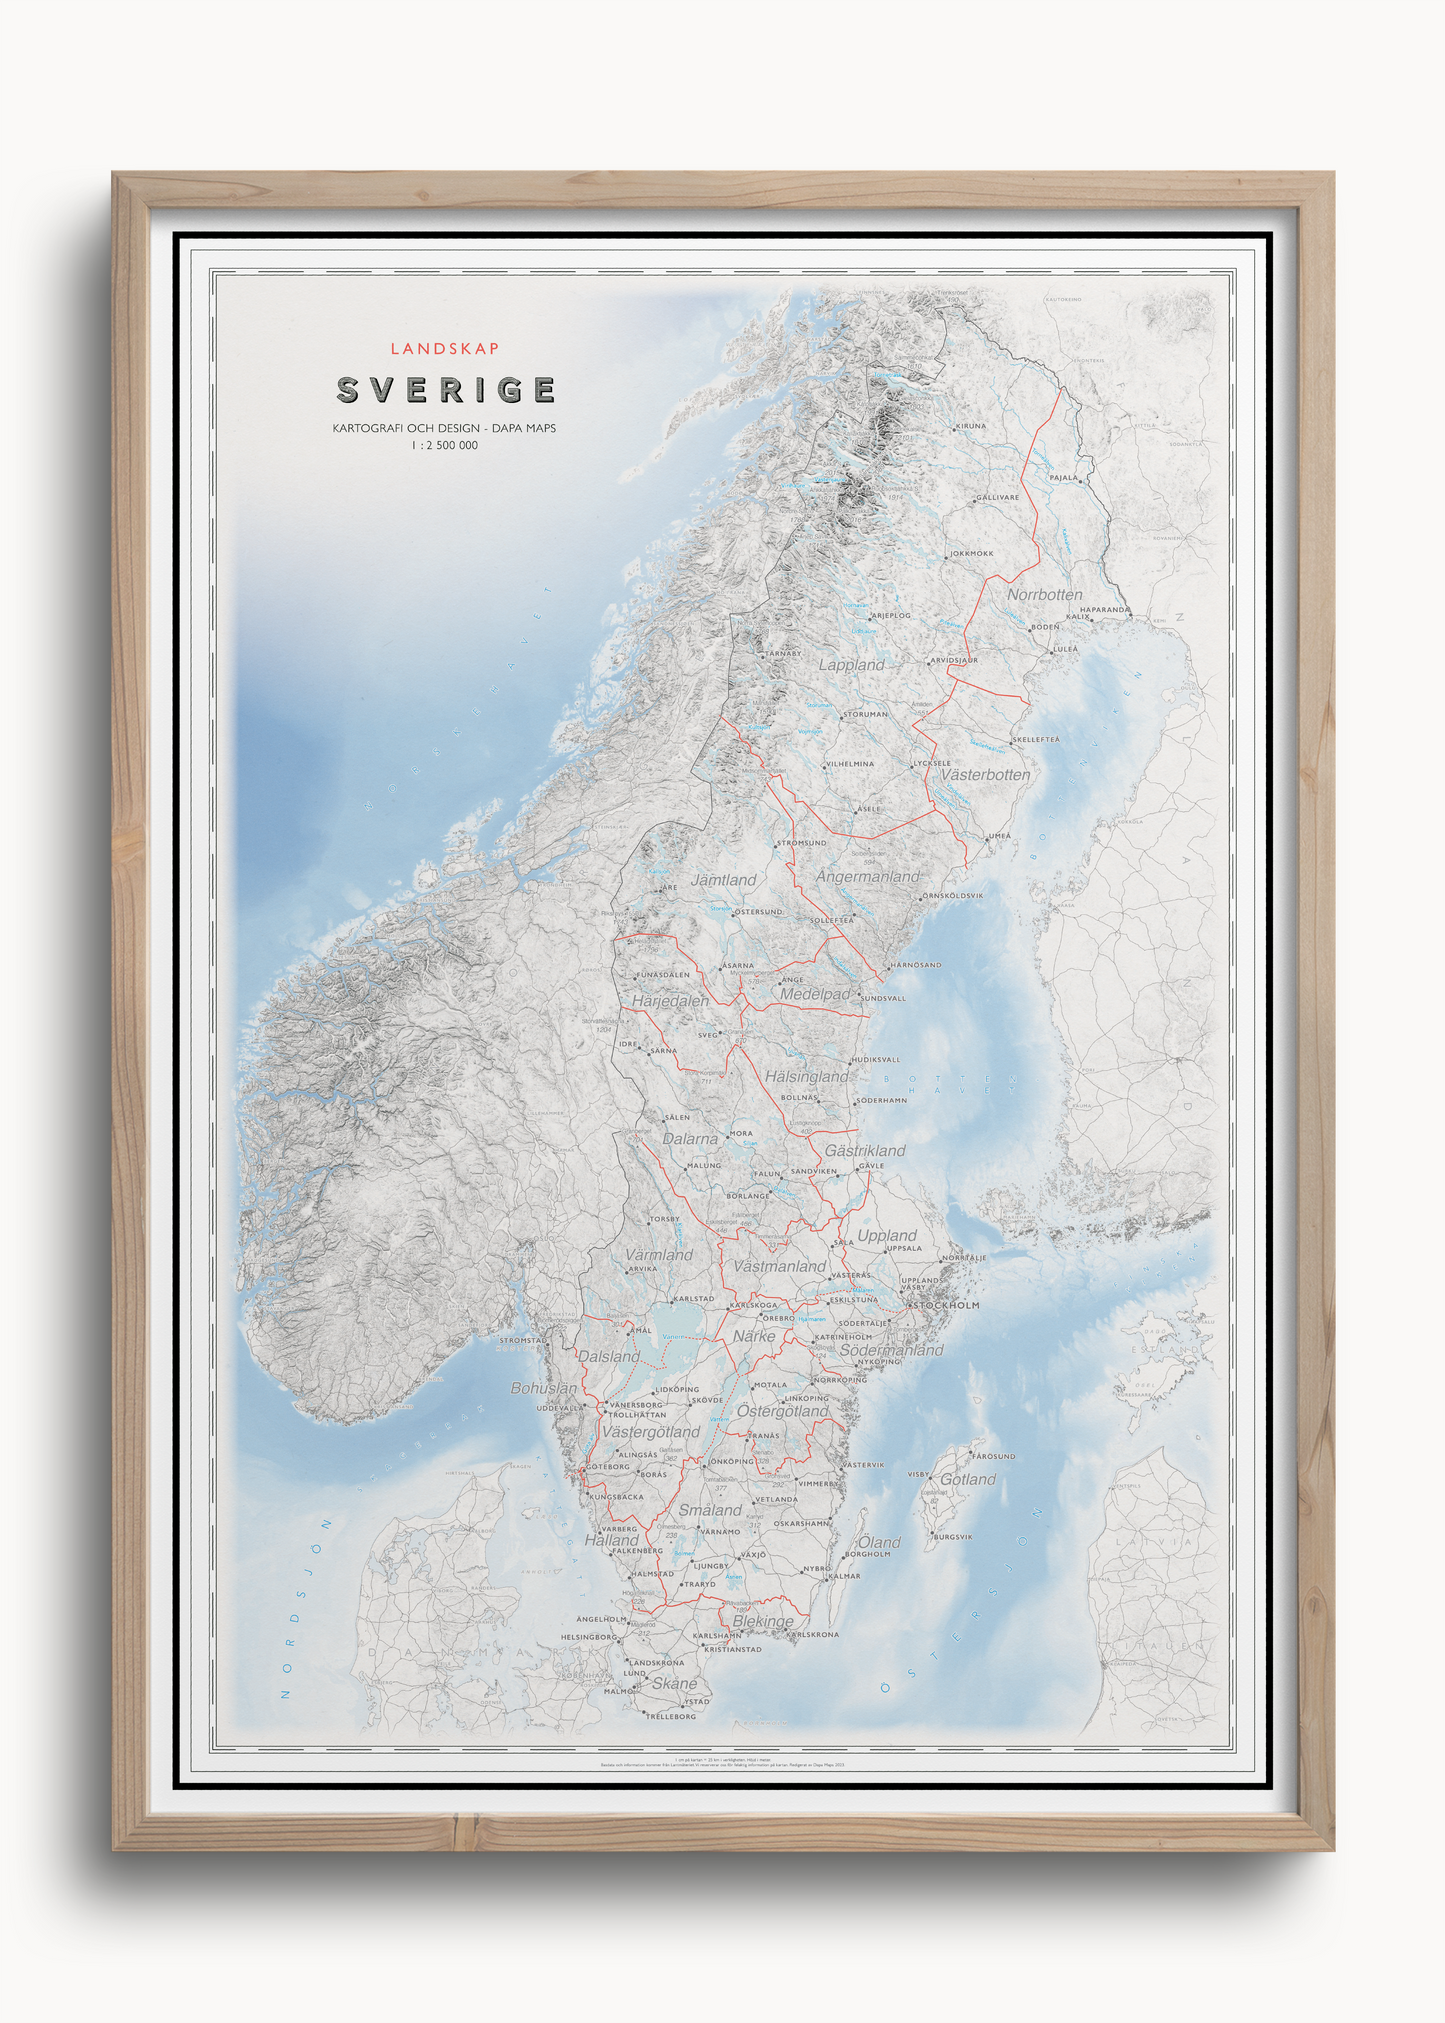 Sverigekarta med landskap